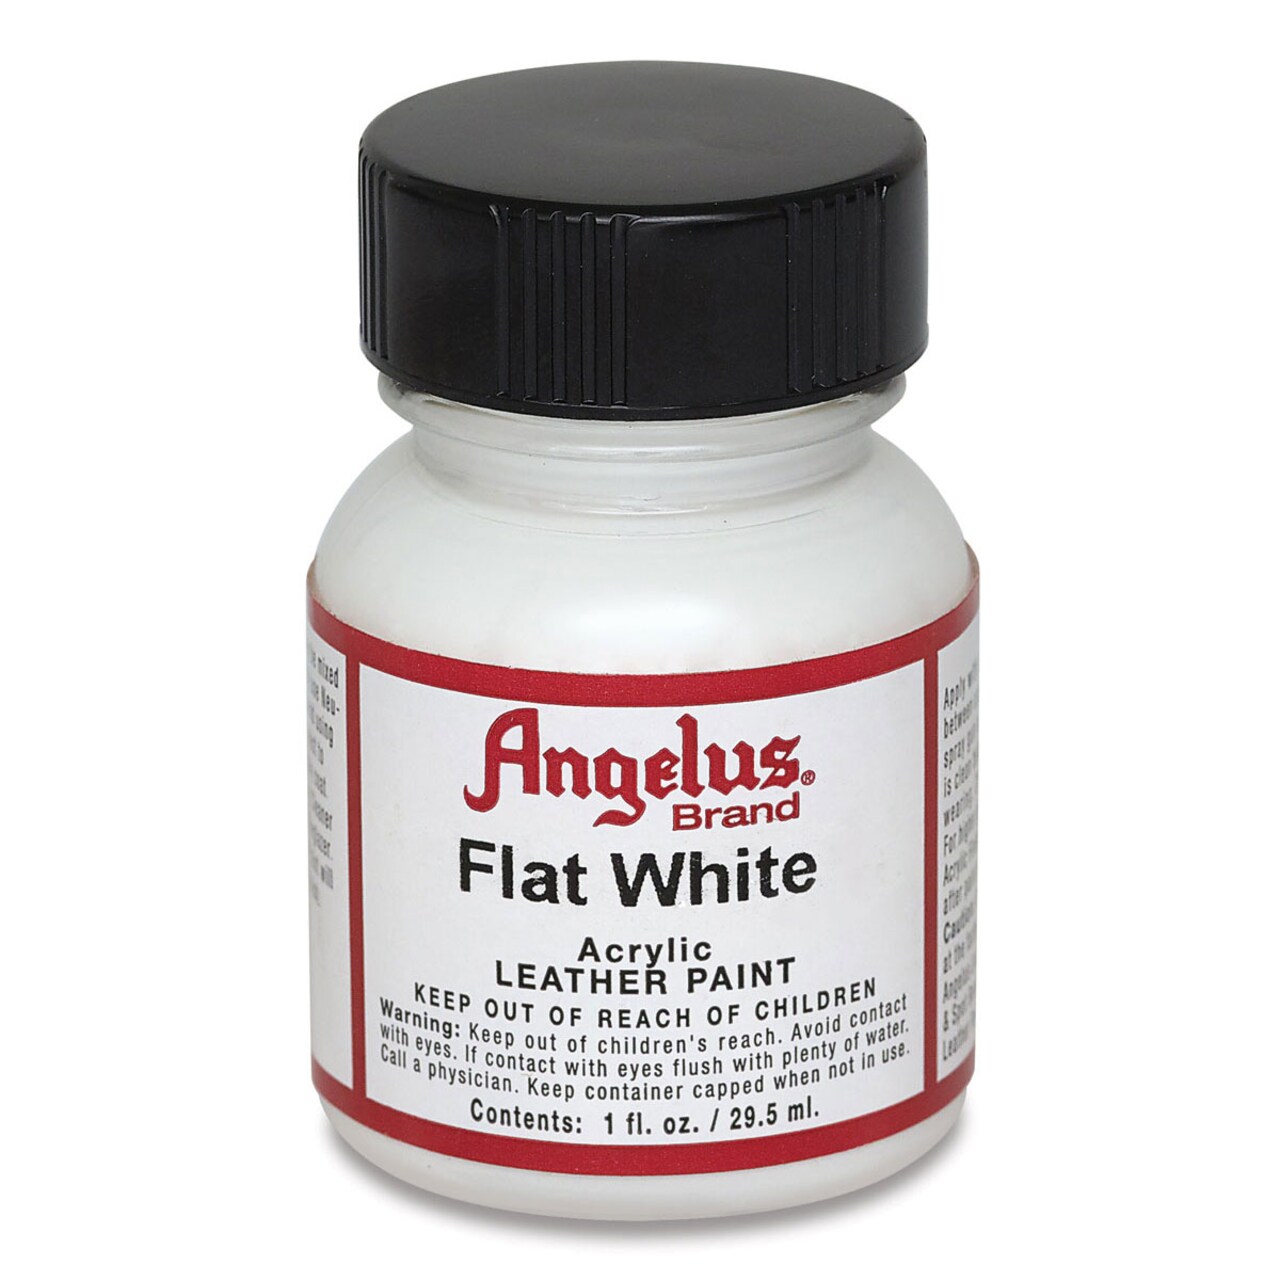 Angelus Acrylic Leather Paint - Flat White, 1 oz